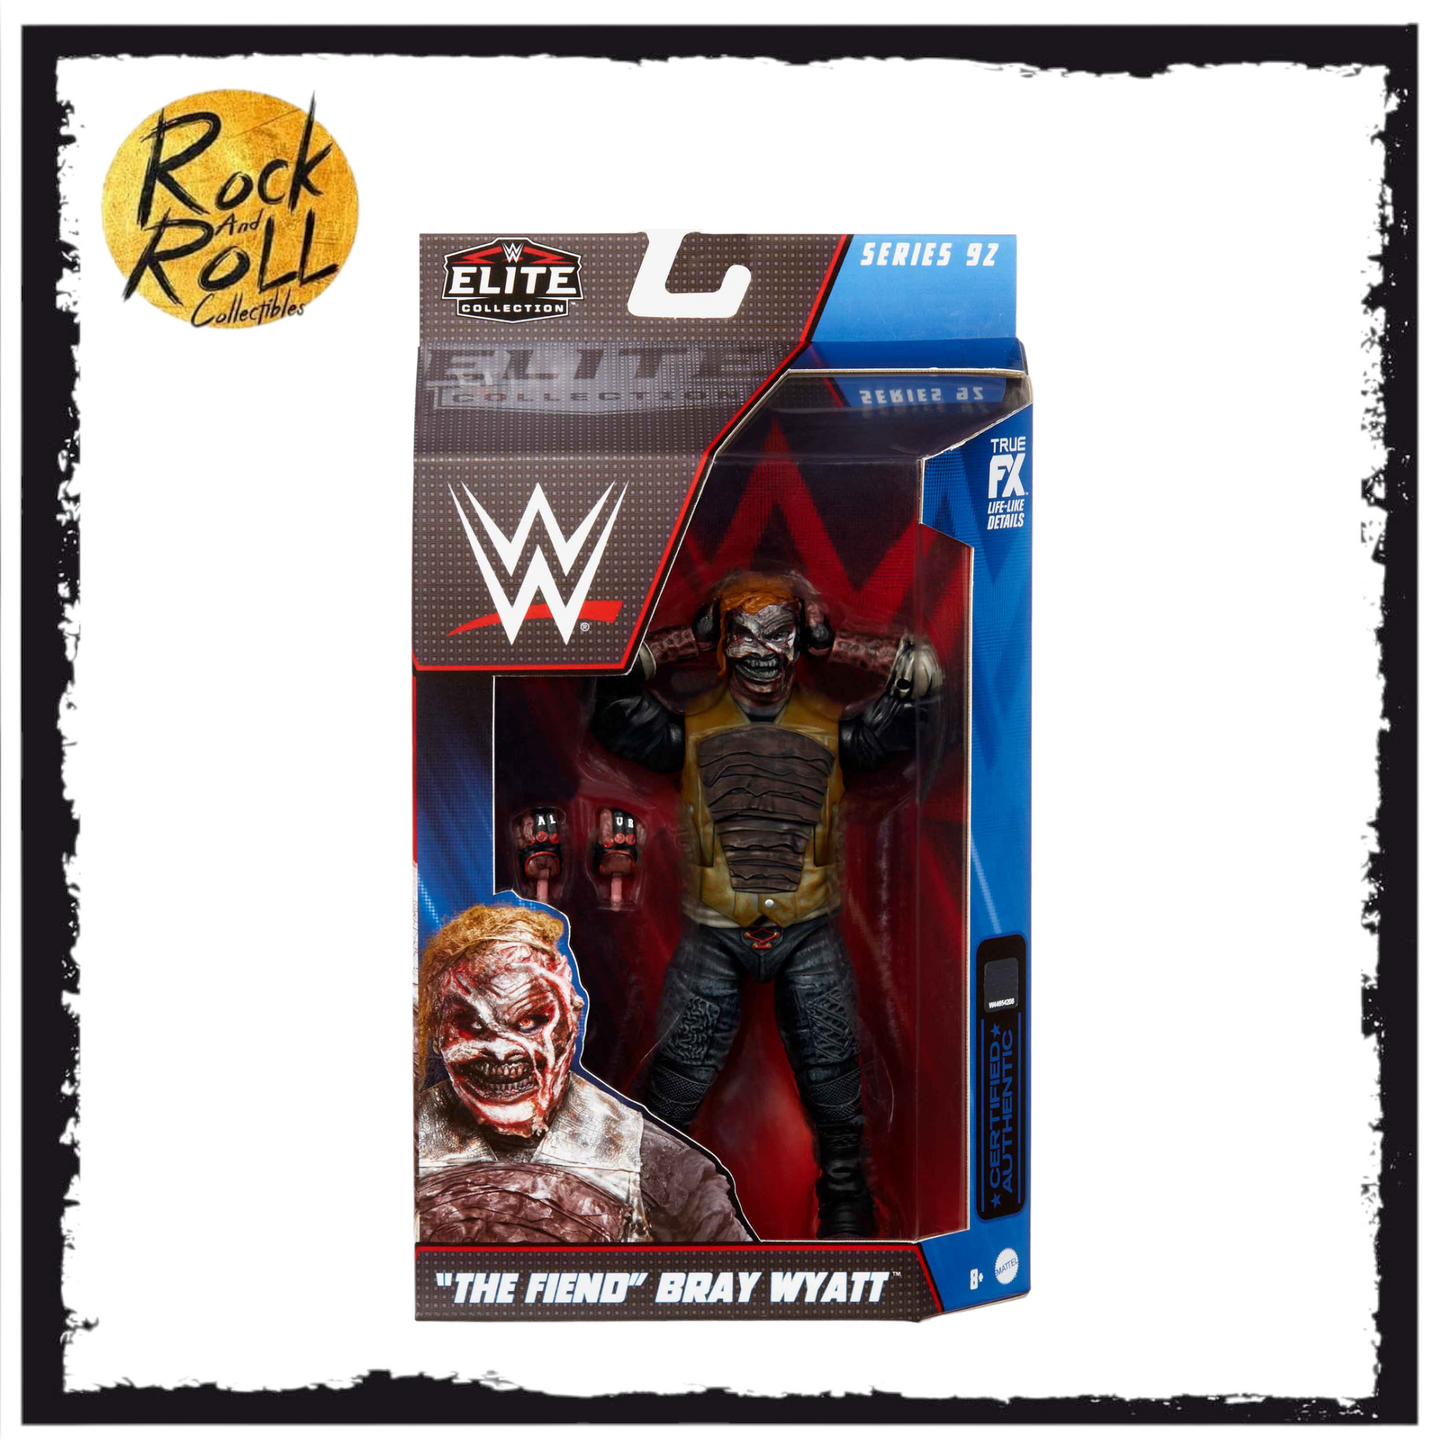 Not Mint Packaging - WWE Elite 92 "The Fiend" Bray Wyatt. US Import